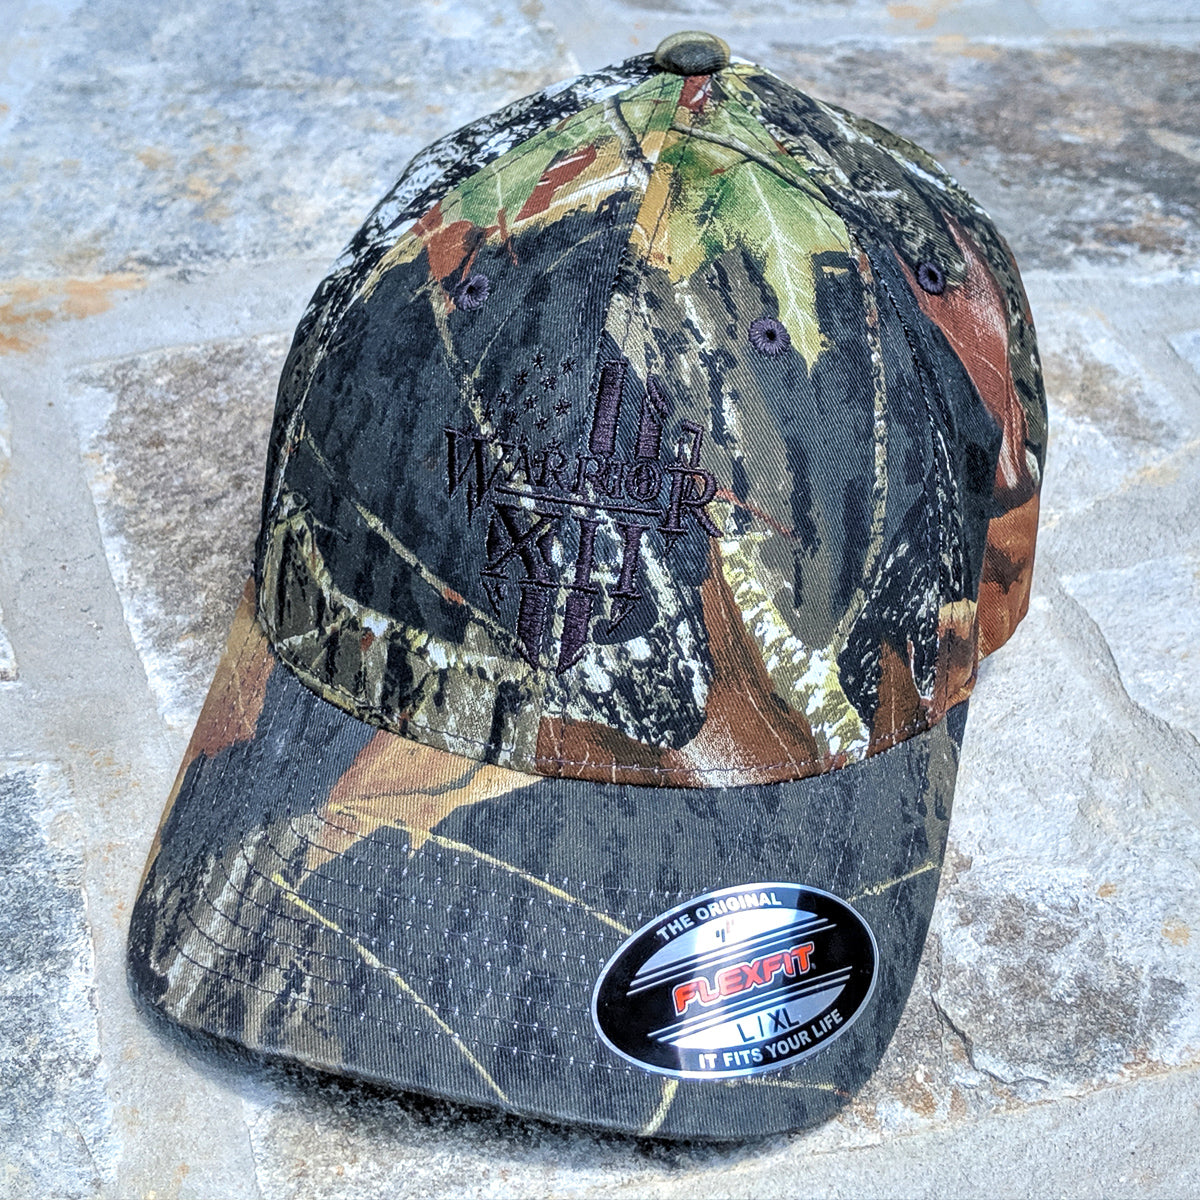 The Warrior Mossy Oak Flexfit Hat